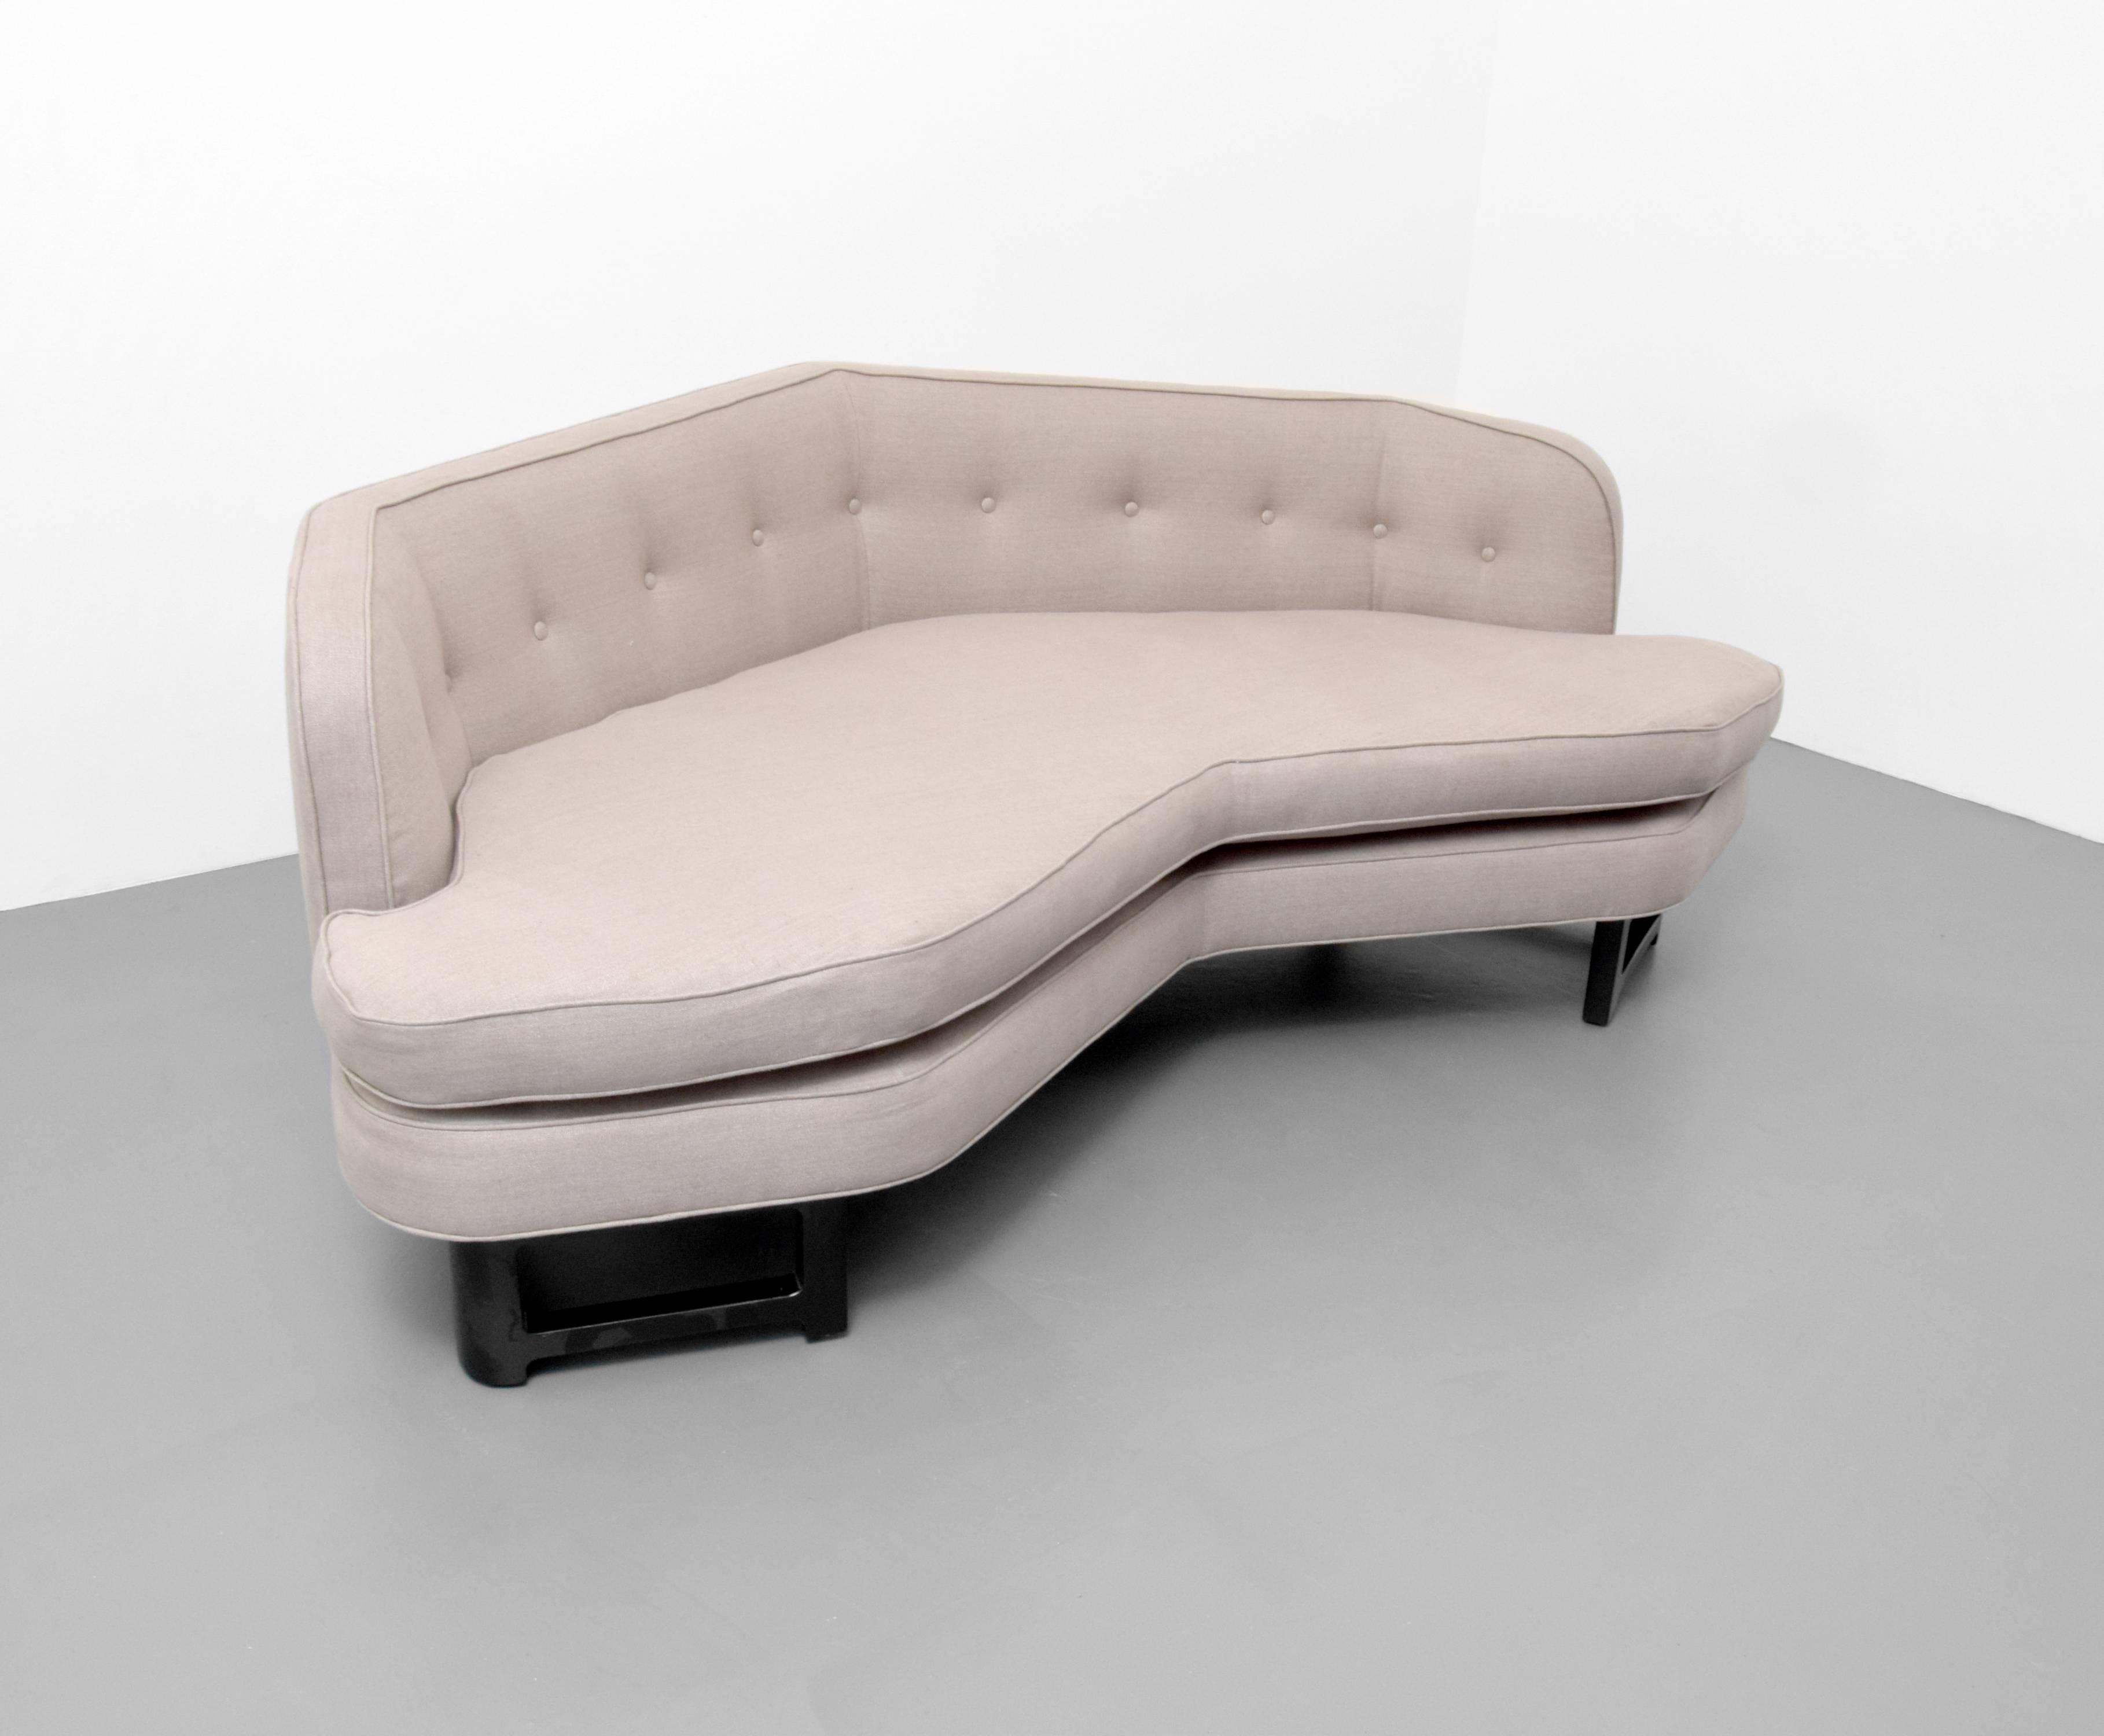 Sofa, model #6329, by Edward Wormley for Dunbar.